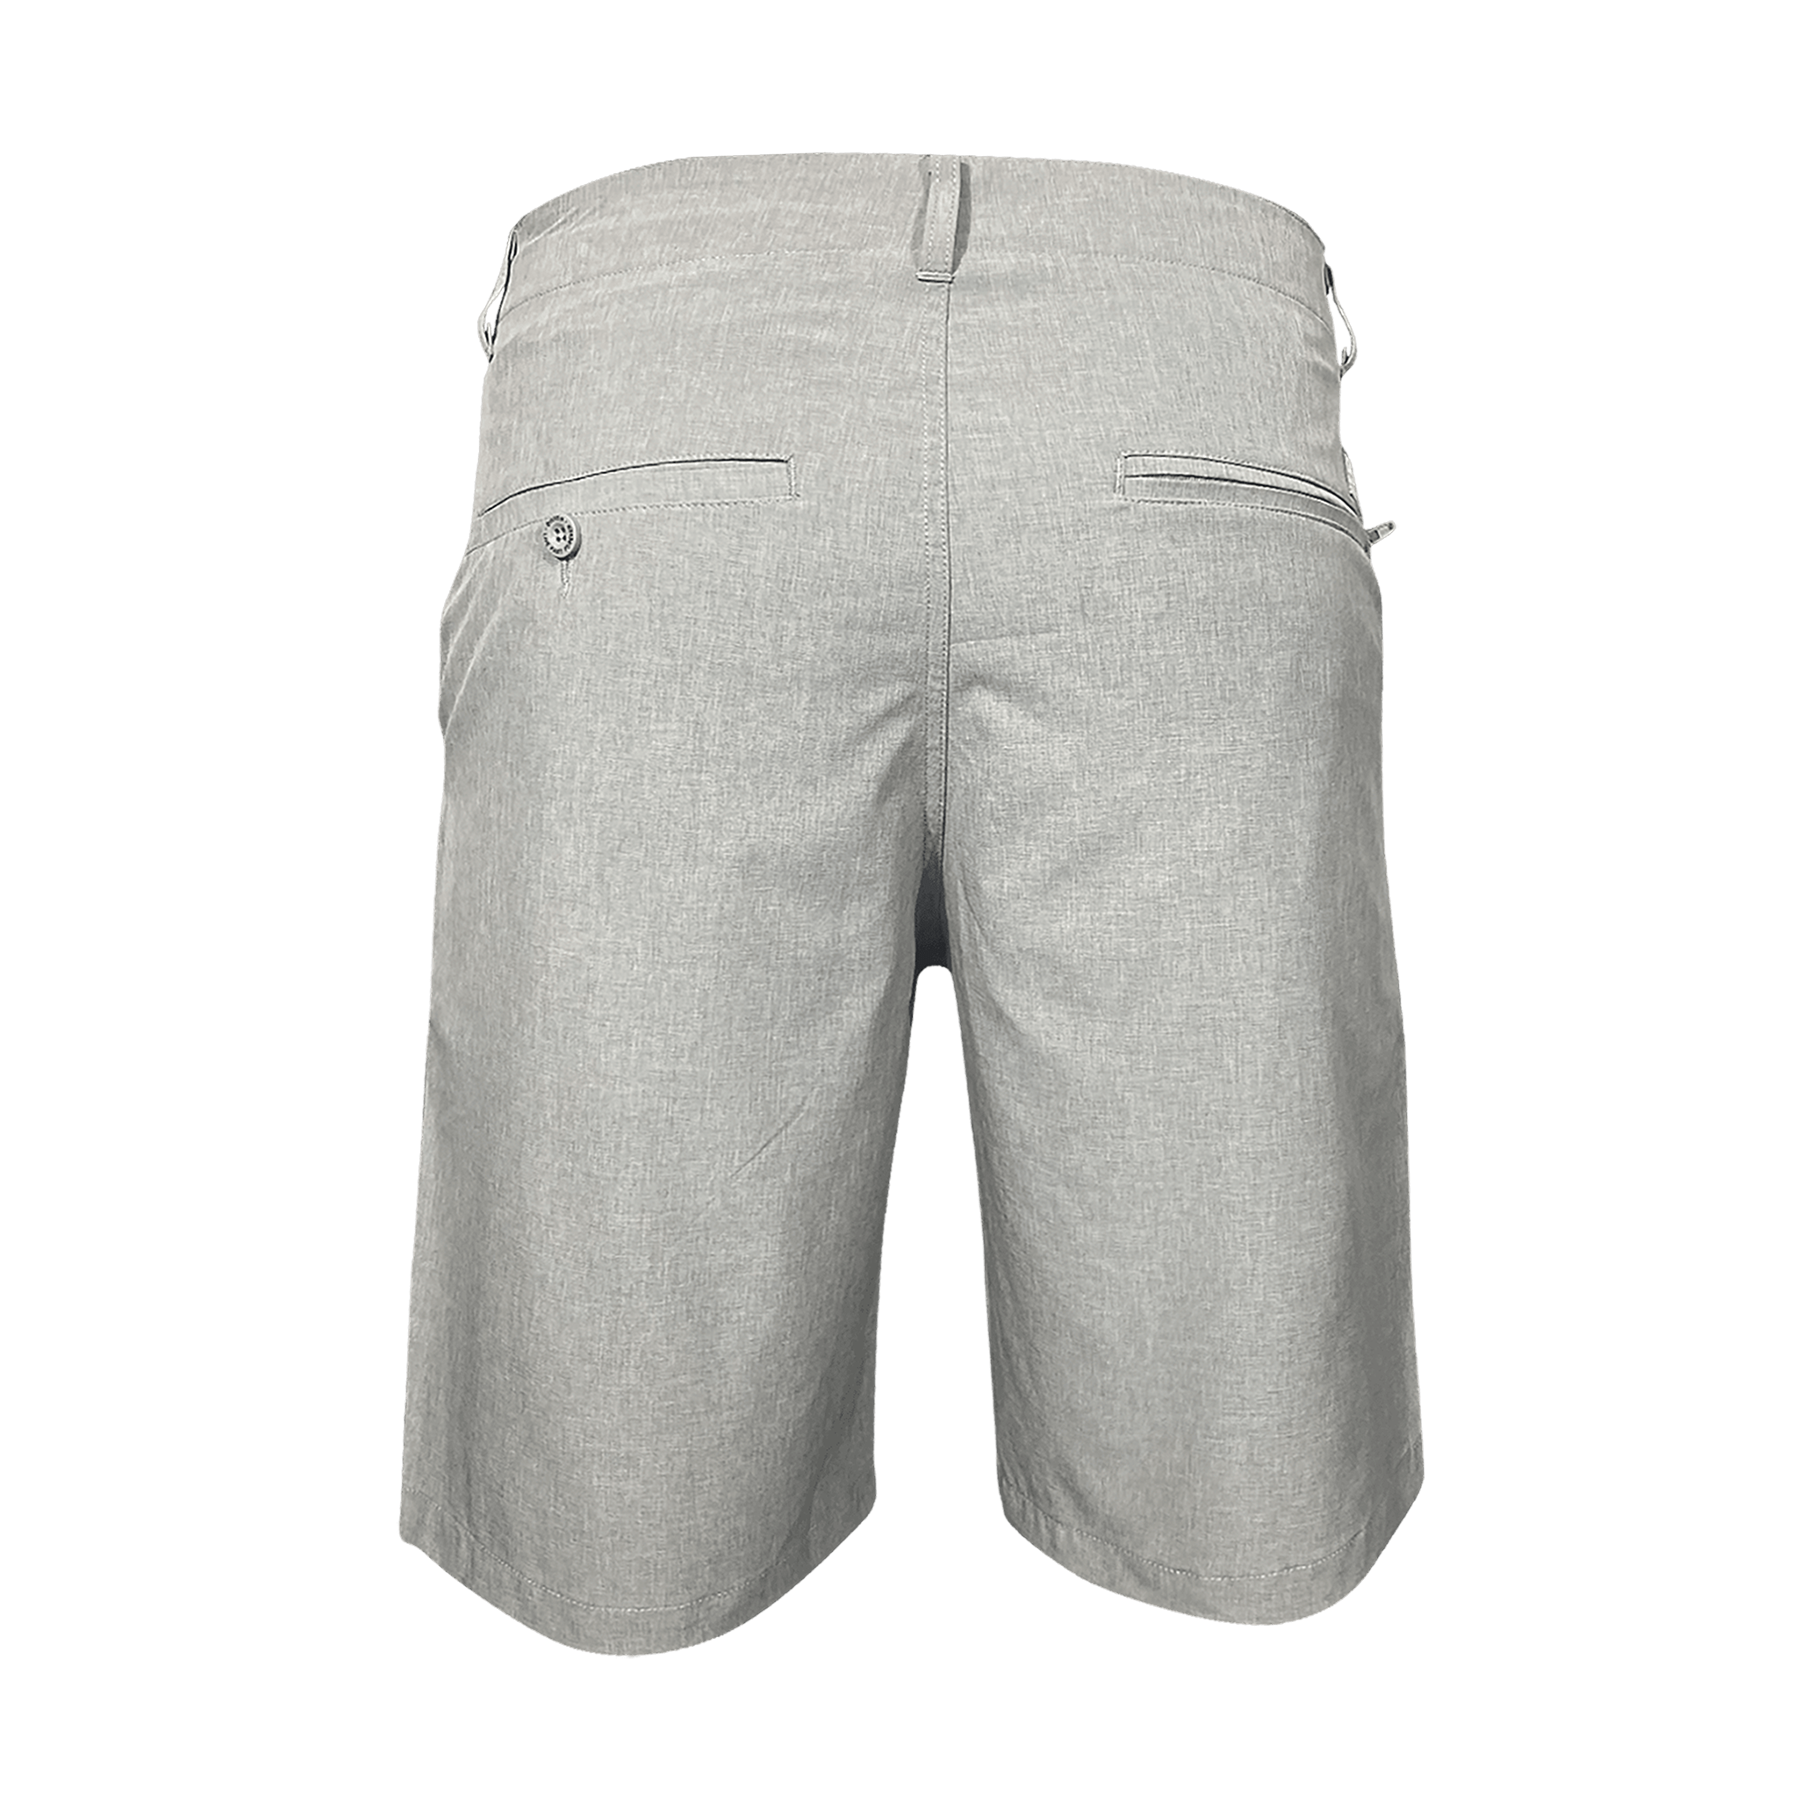 Dixxon Hybrid Shorts - Light Grey | Dixxon Flannel Co.